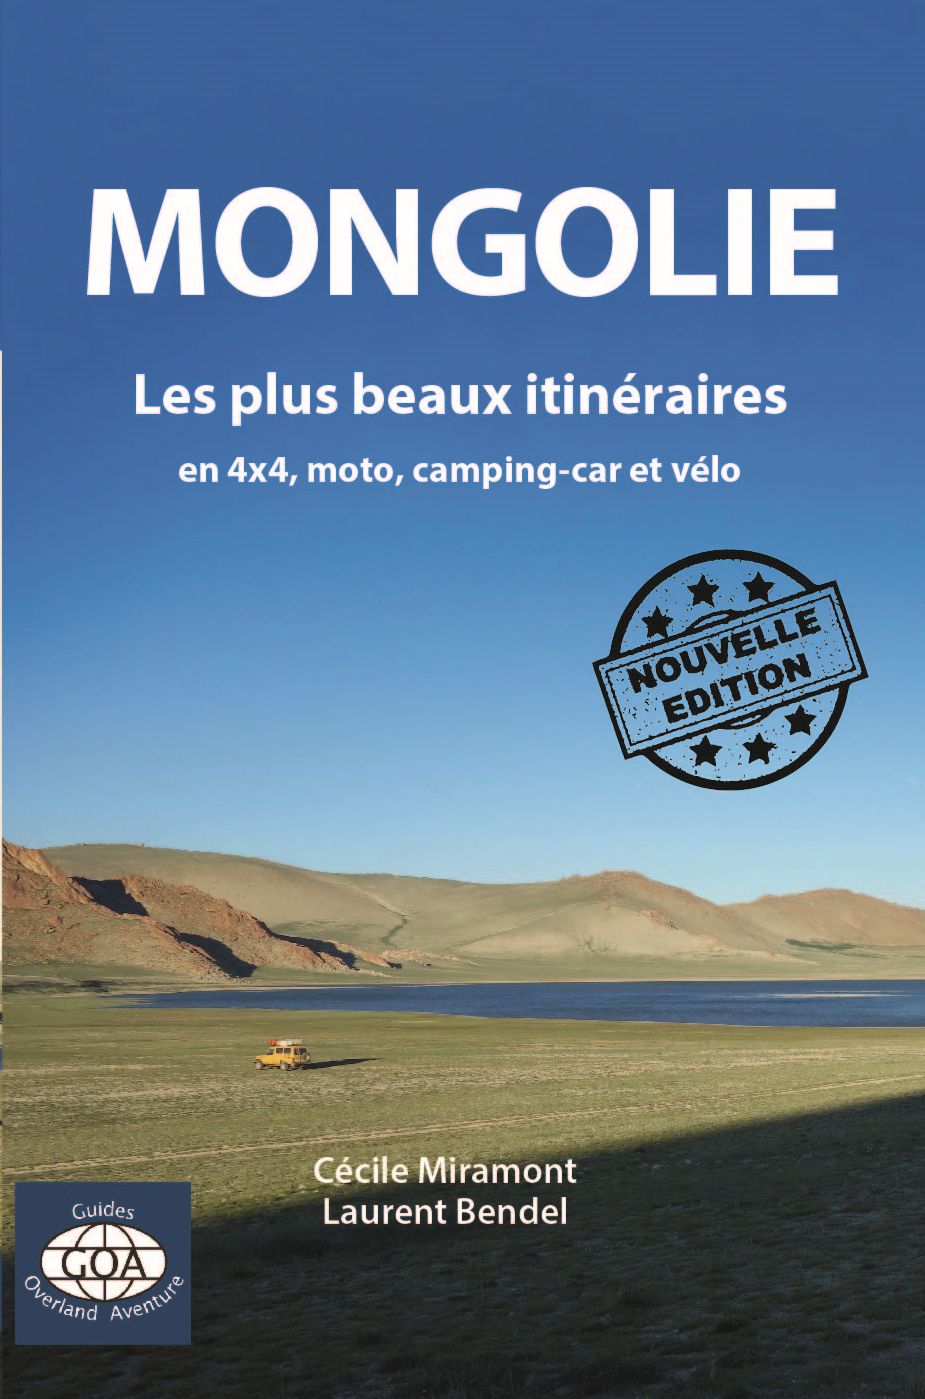 temps de voyage france mongolie